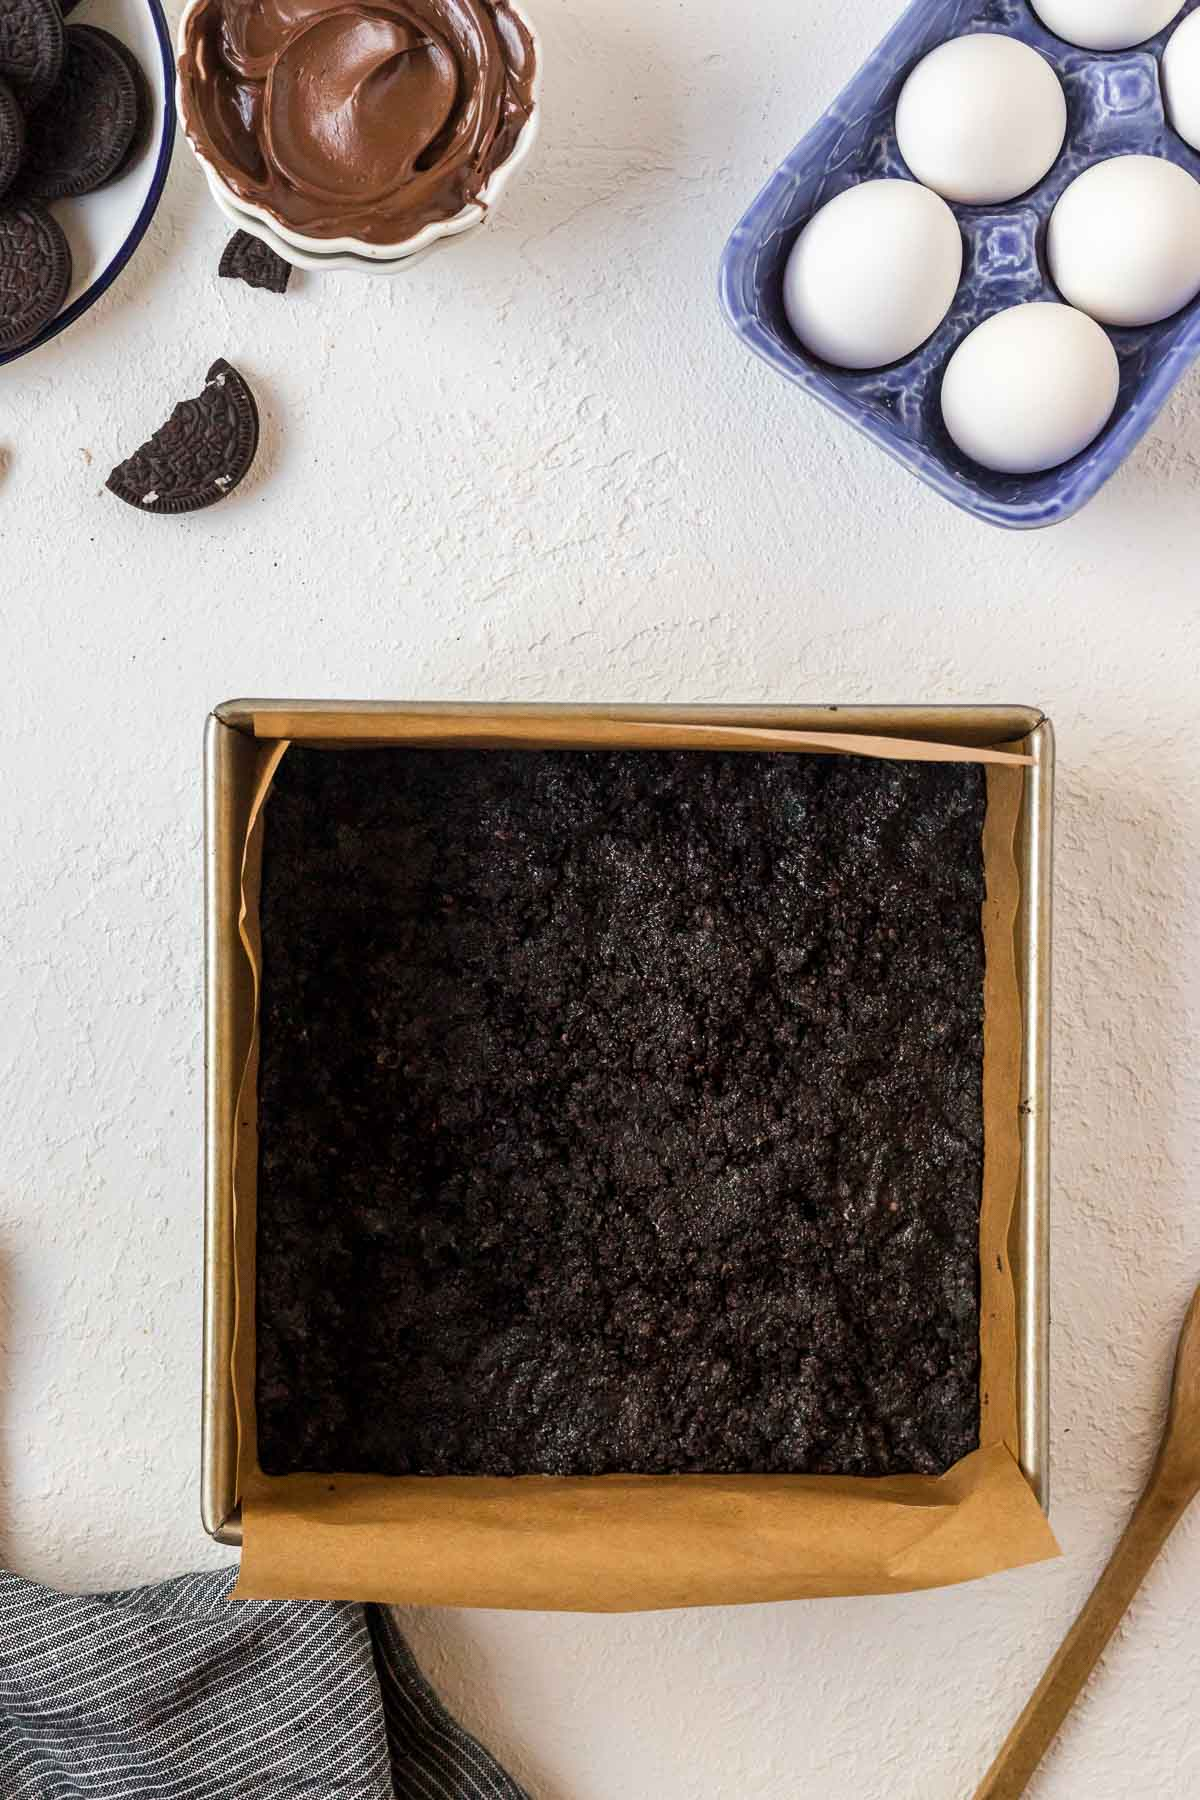 Oreo crust in pan